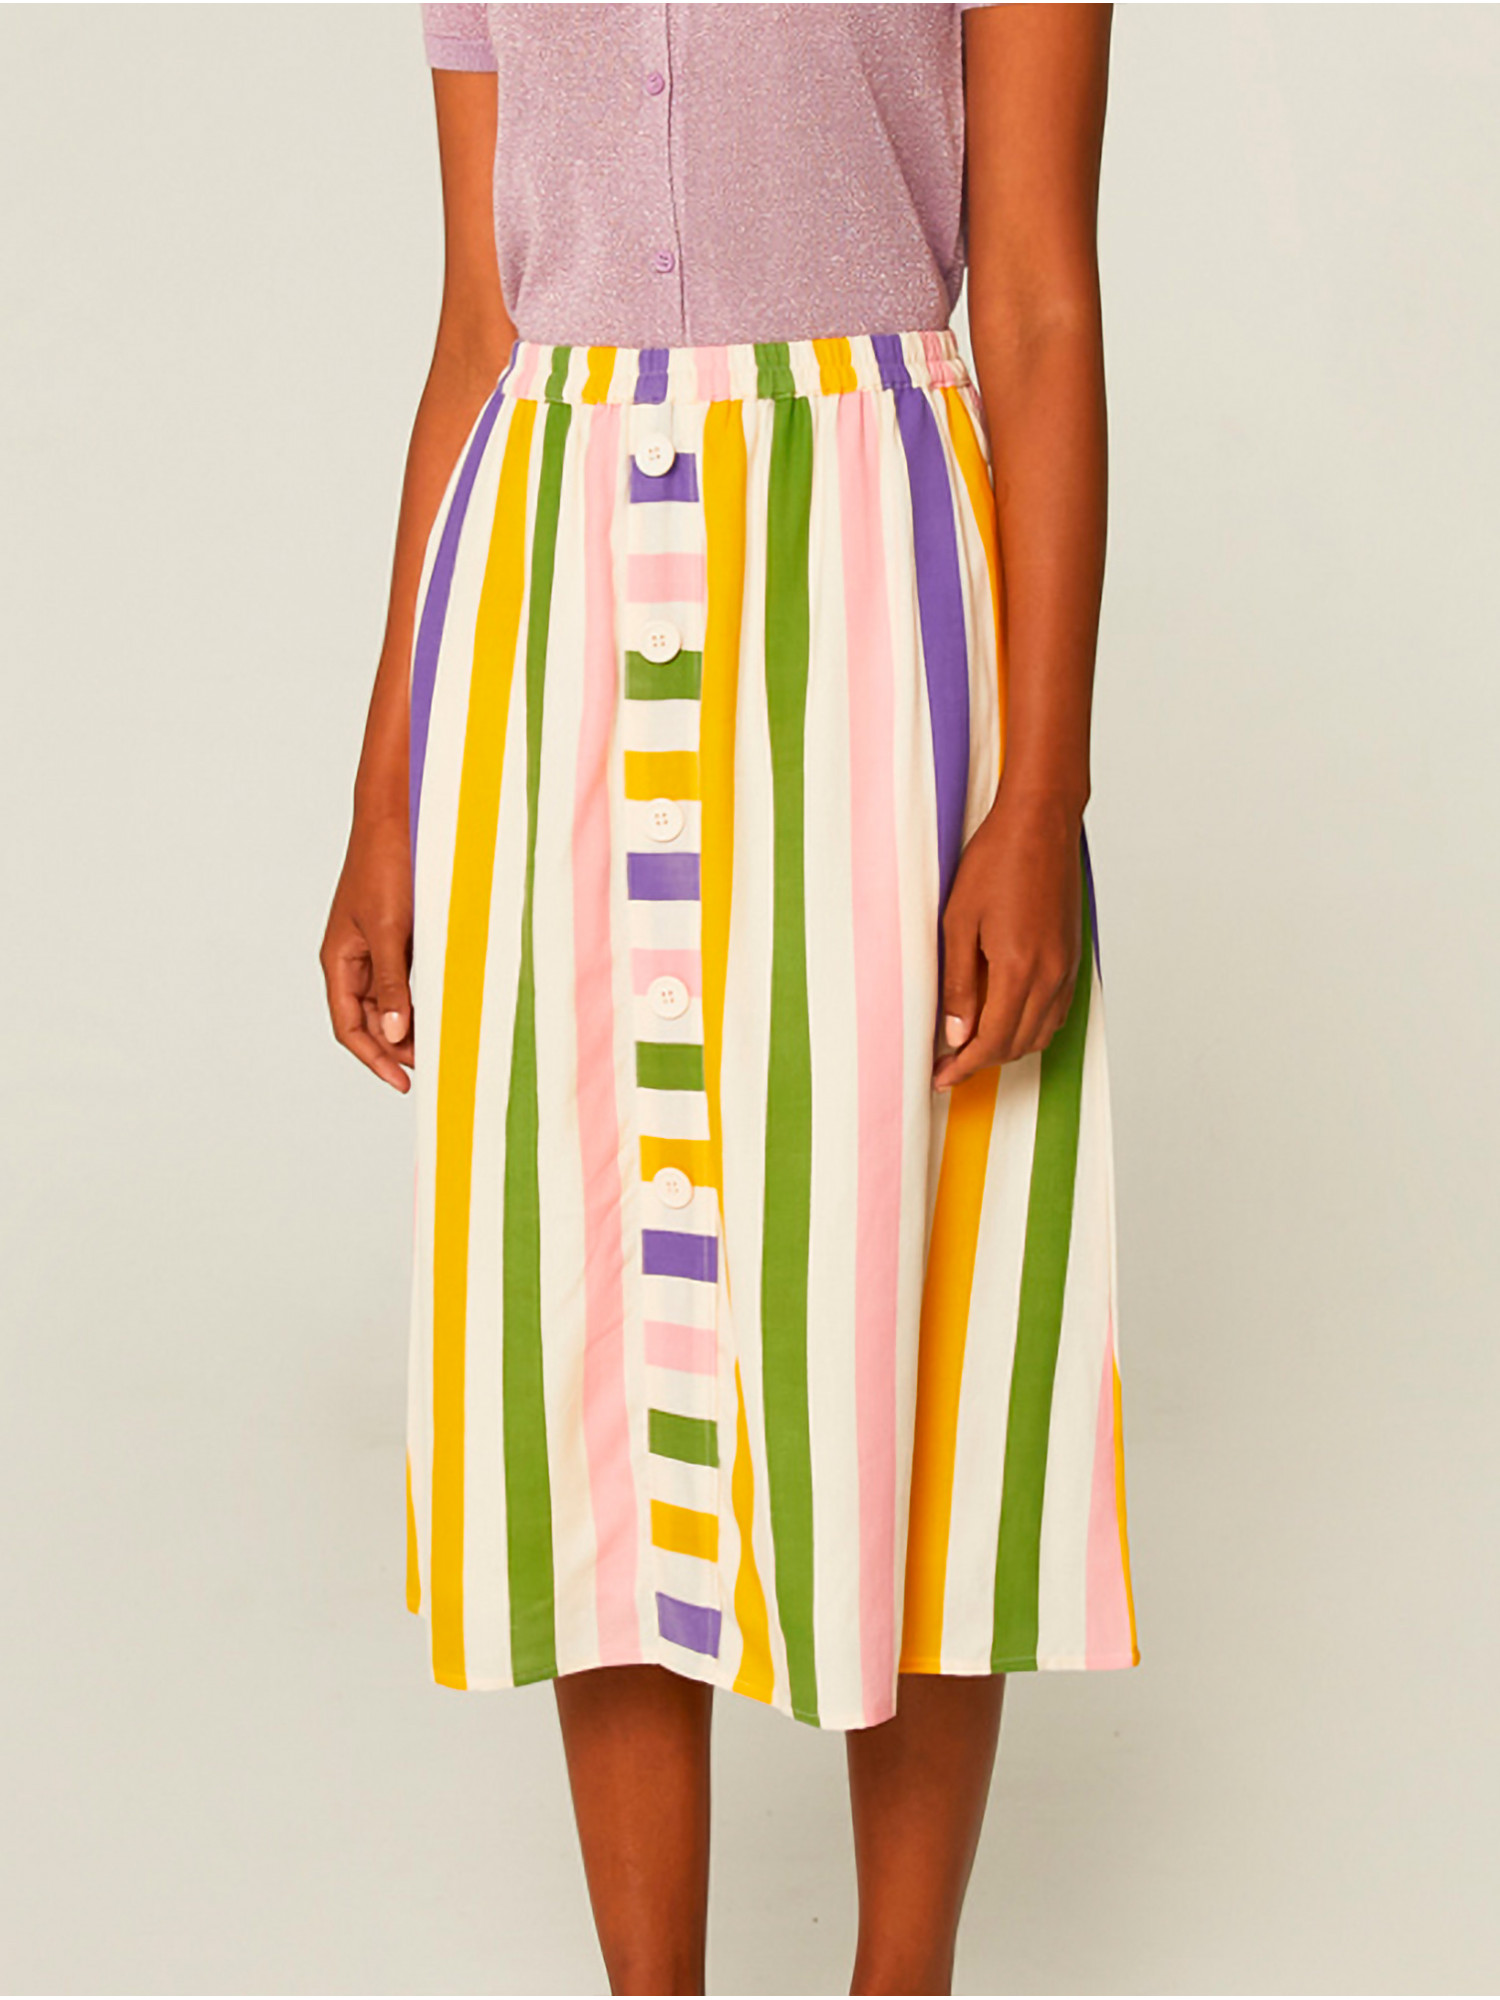 Falda corte midi con cintura elástica y estampado a rayas multicolor de Compañía Fantástica.